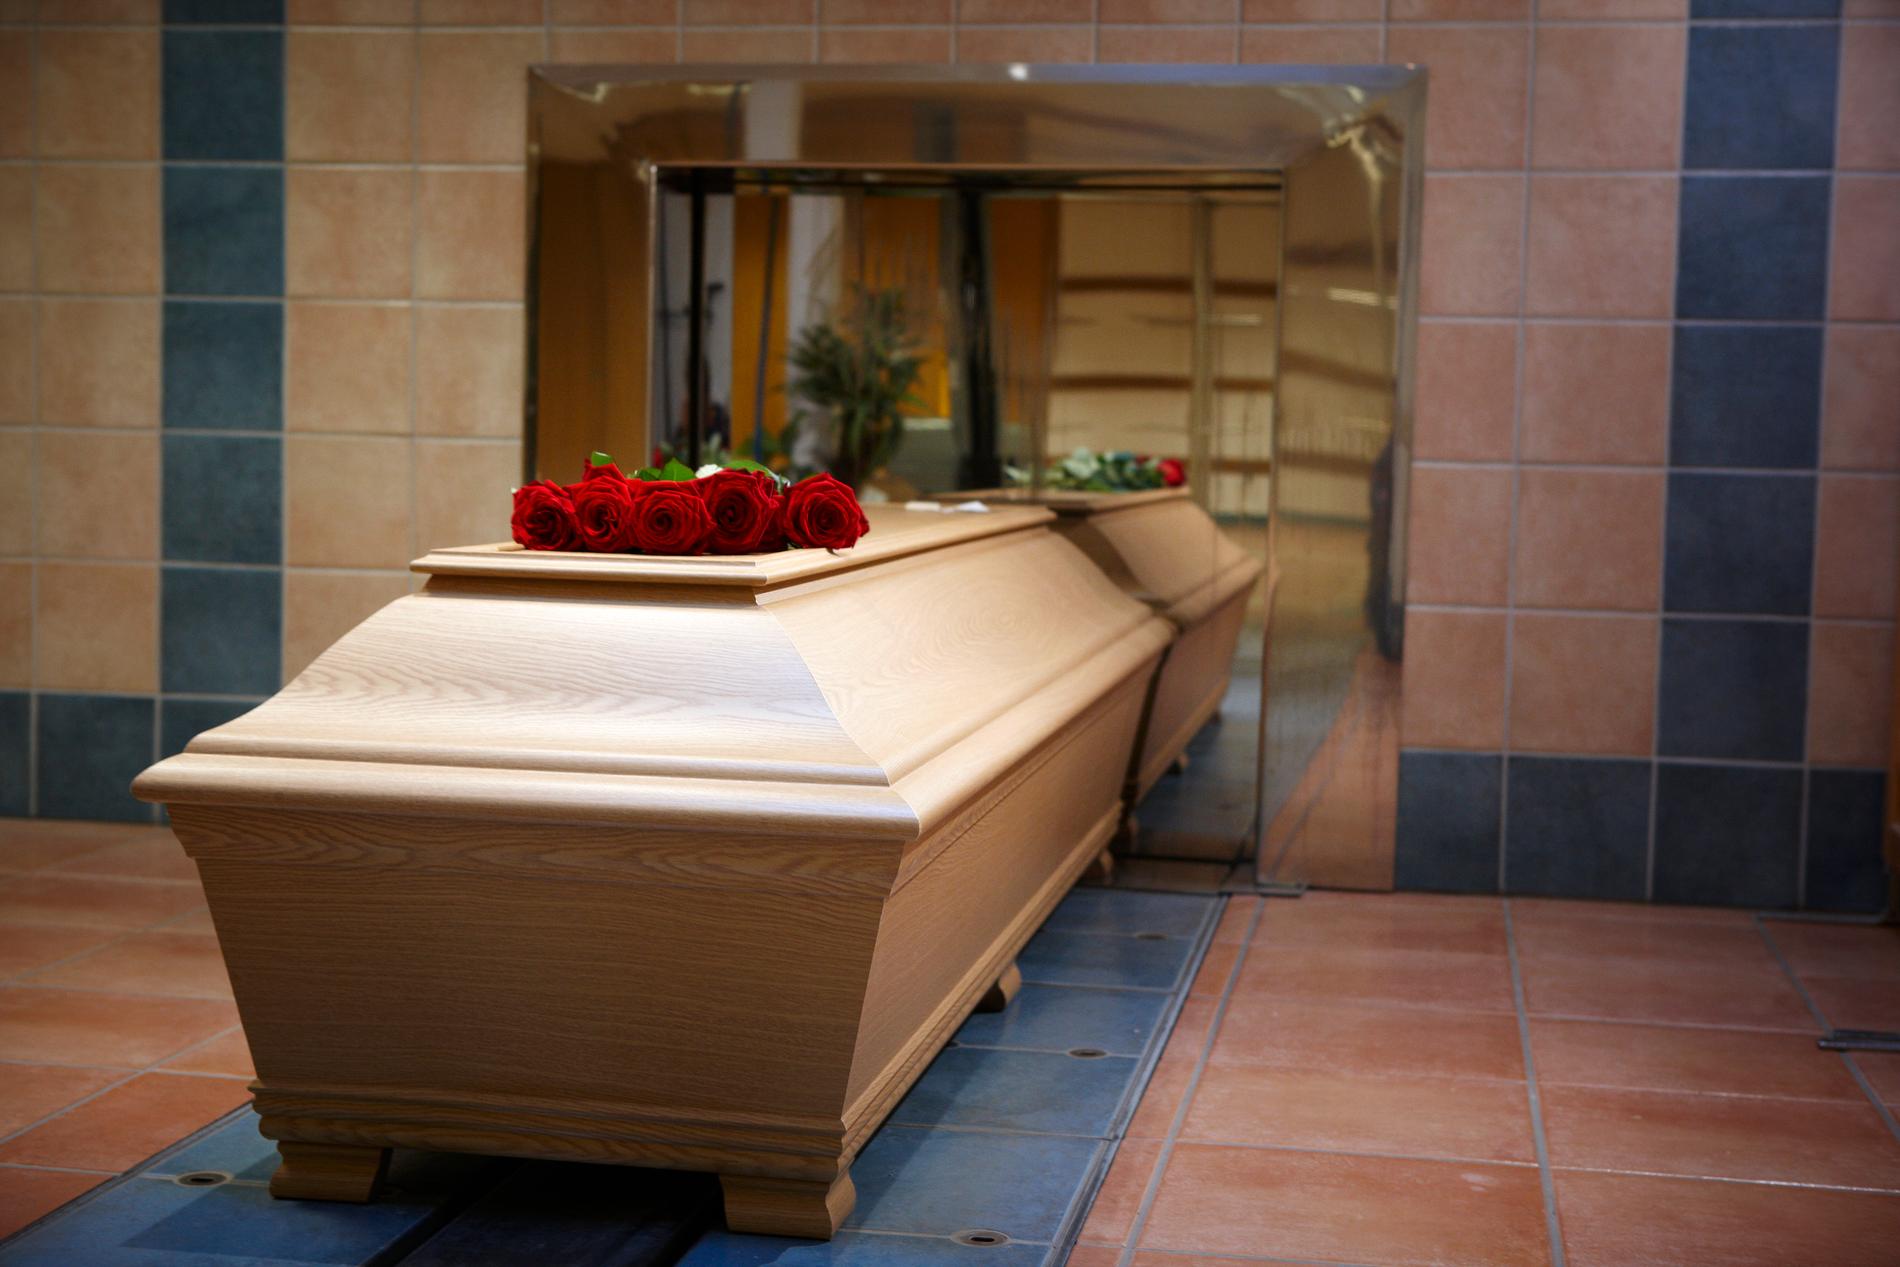 Många av landets krematorier kan inte hantera större kistor. Arkivbild.